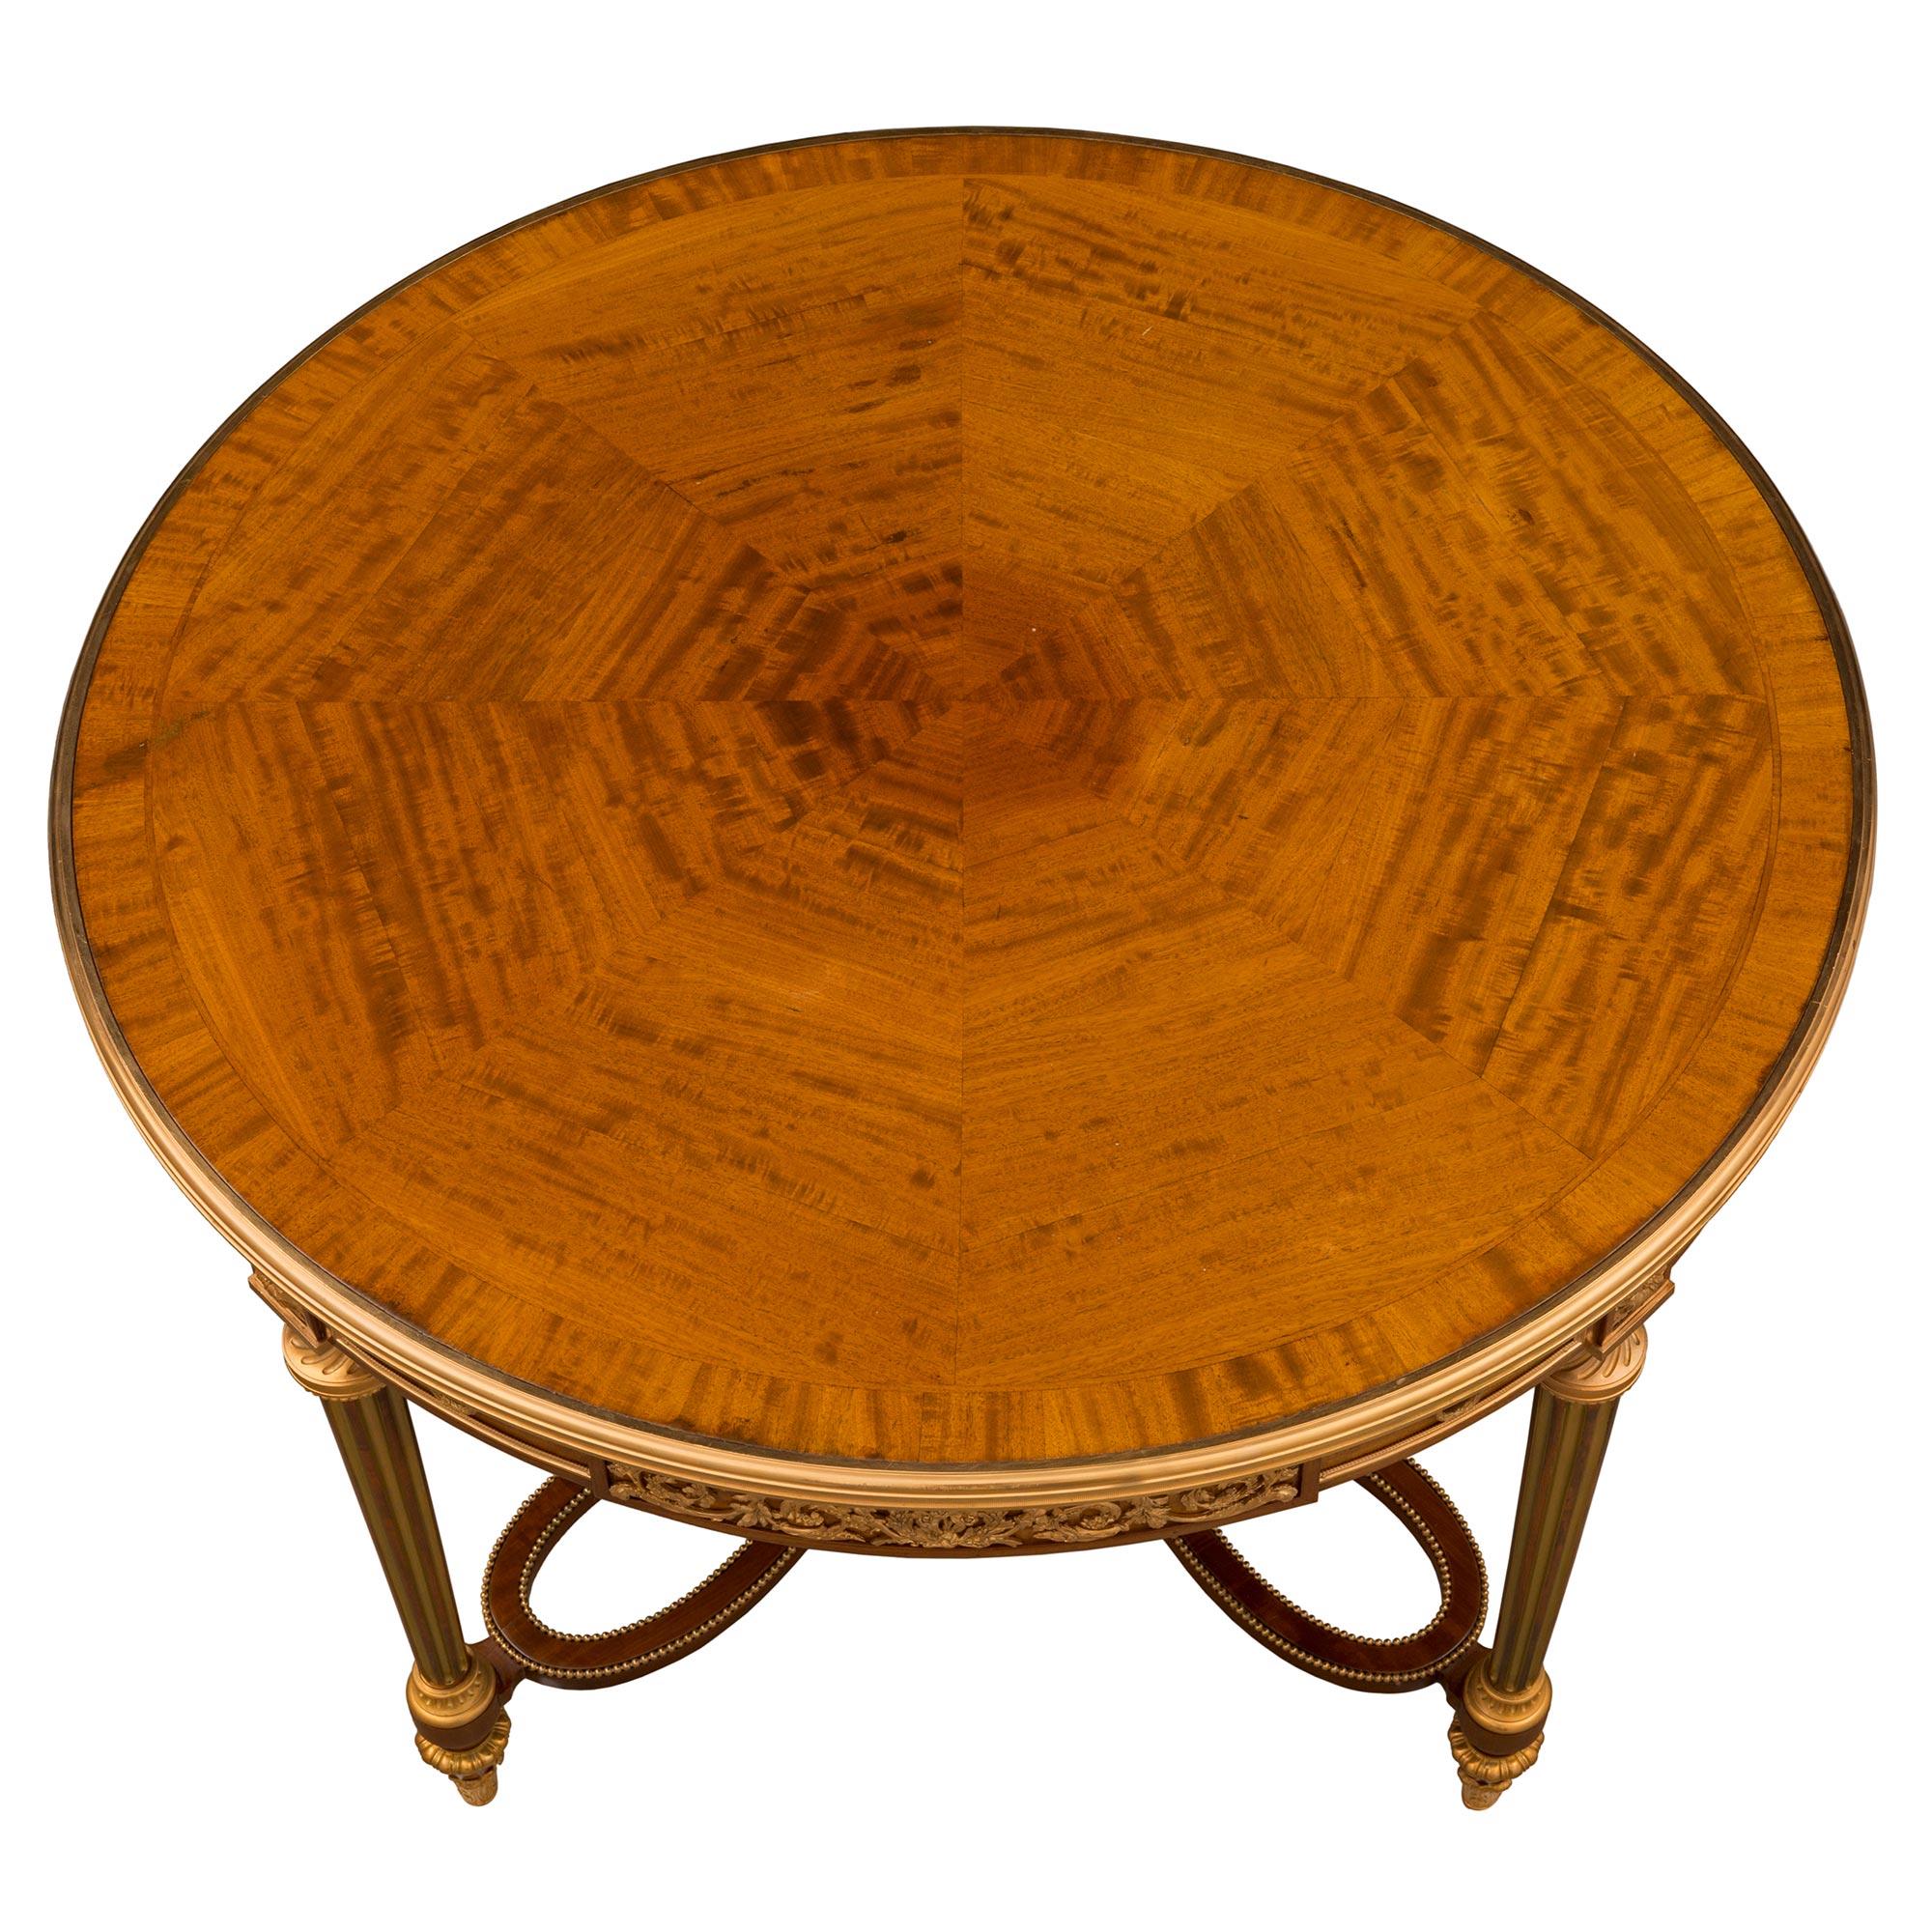 Superbe table centrale de très haute qualité, de style Louis XVI, datant du XIXe siècle, en acajou, bois de satin et bronze doré, attribuée à Henry Dasson. La table circulaire est surélevée par de délicats pieds en forme de topie avec de beaux